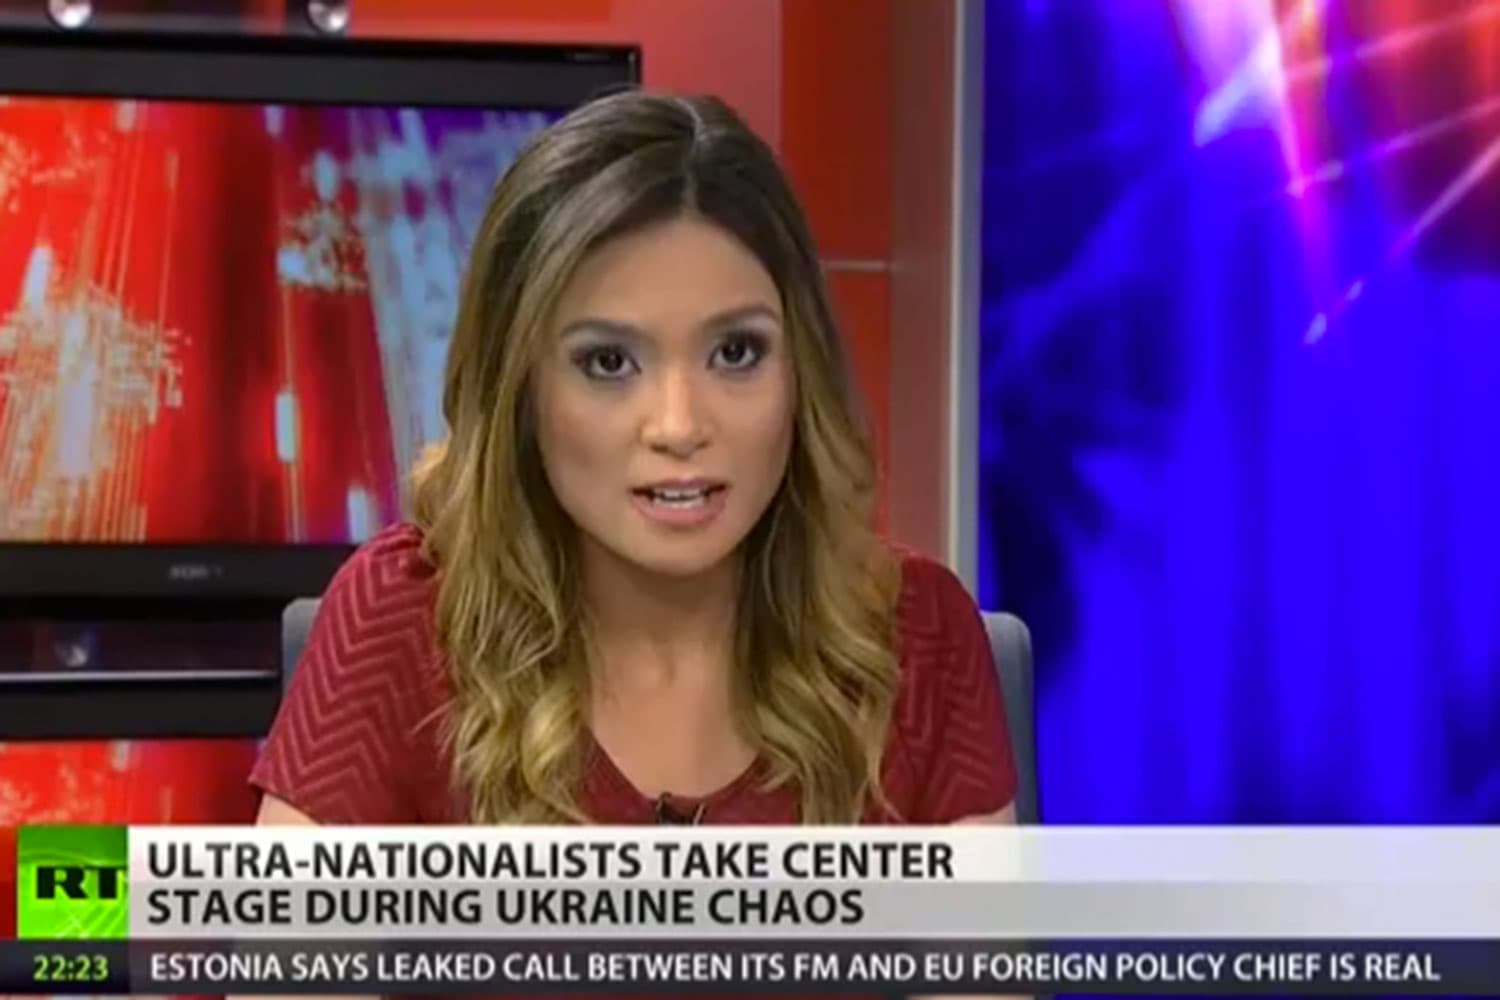 Una periodista dimite por la cobertura sobre Ucrania